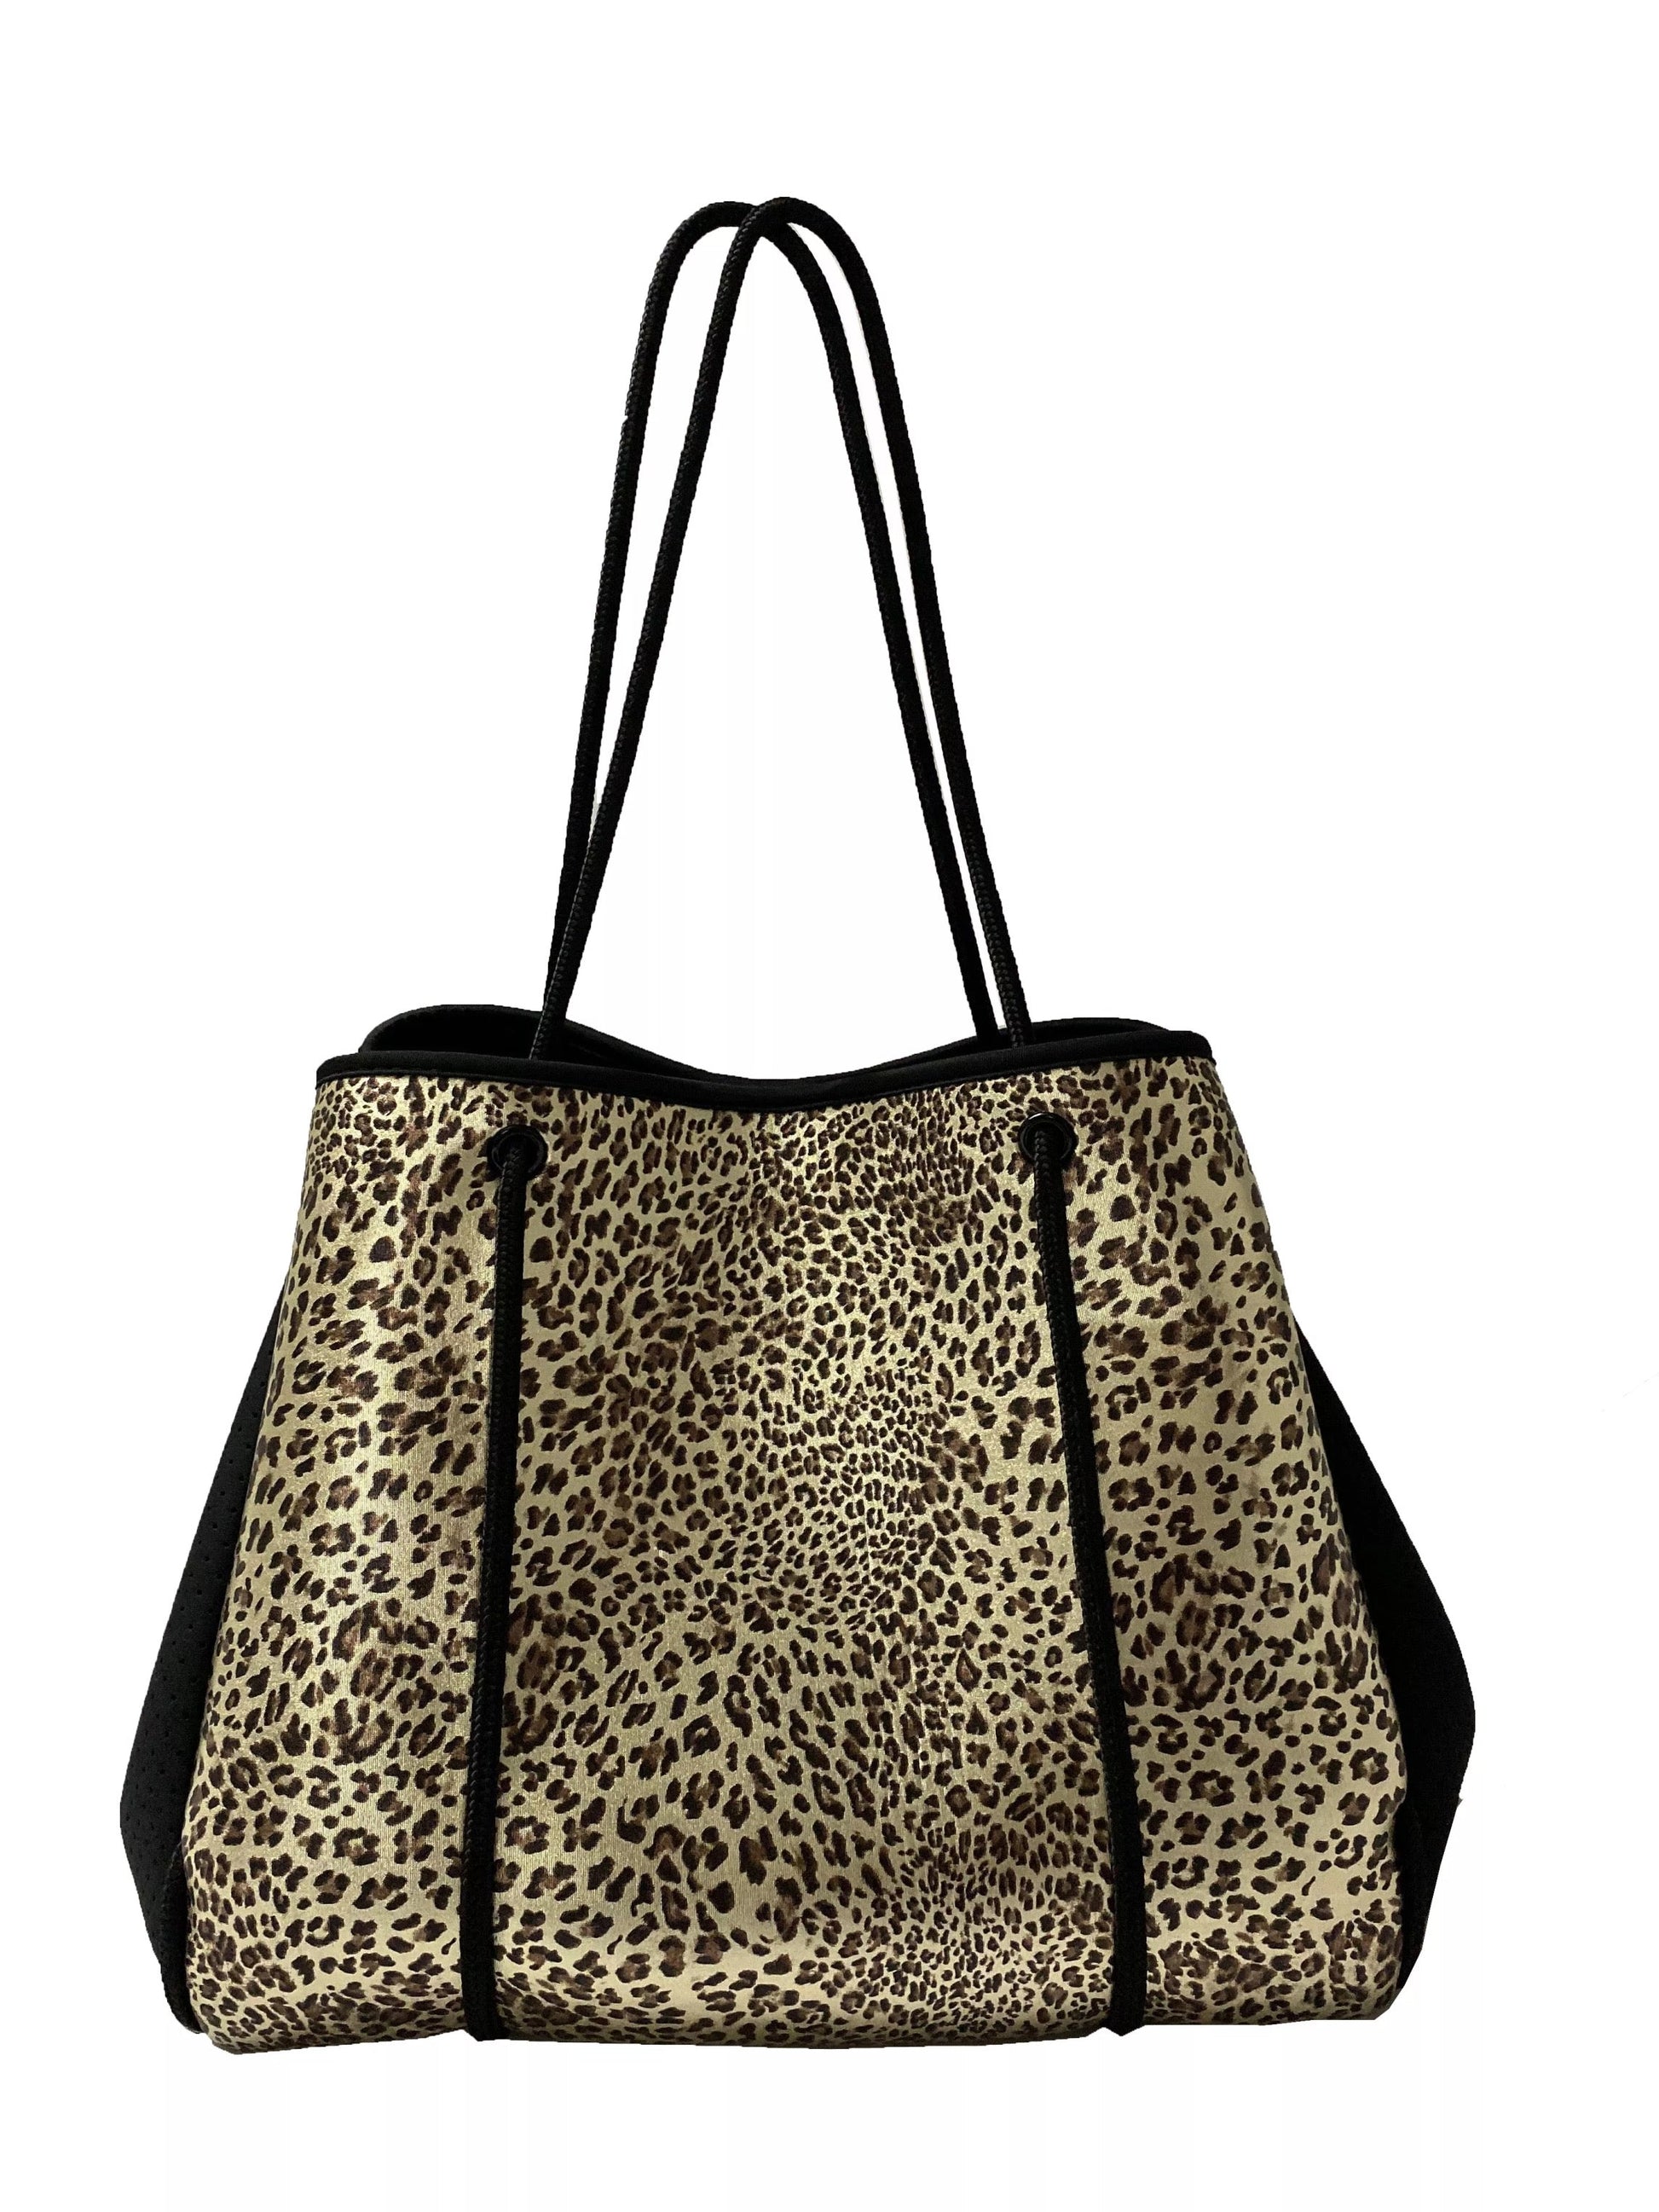 Gold Leopard Neoprene Tote Bag